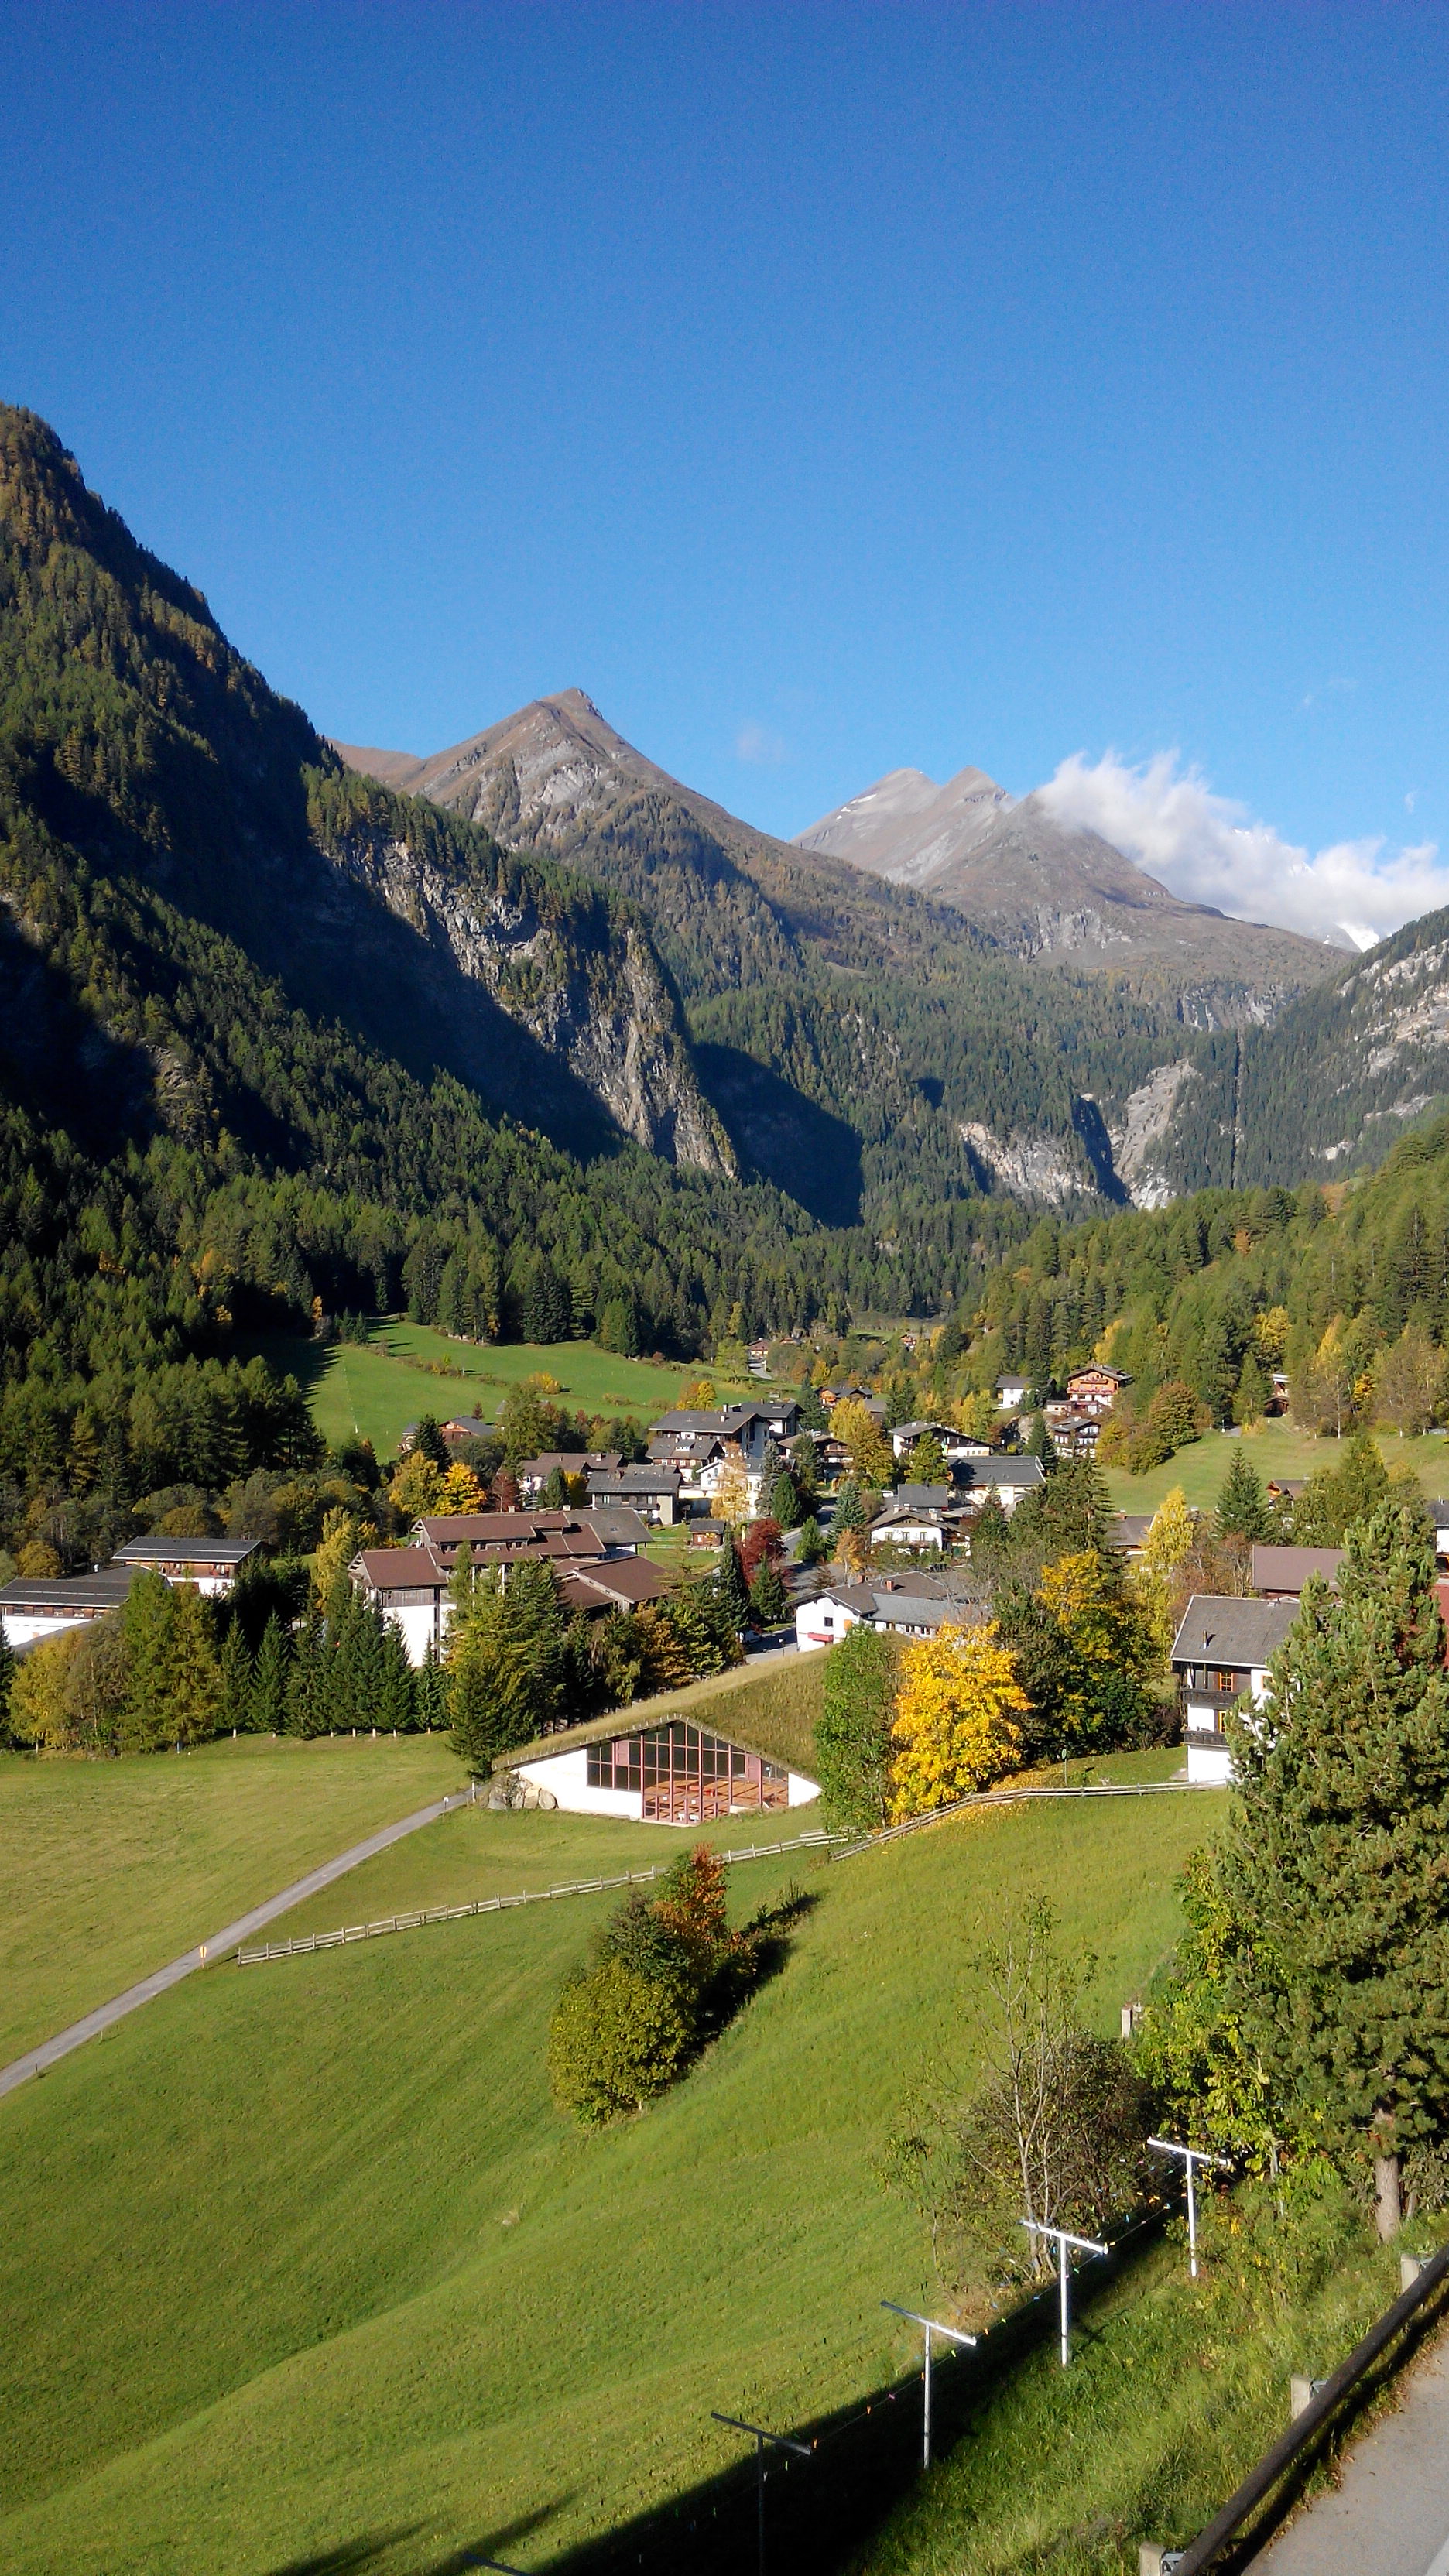 从雪山,到田园,艺术之都 2014.10-瑞士,奥地利,德国